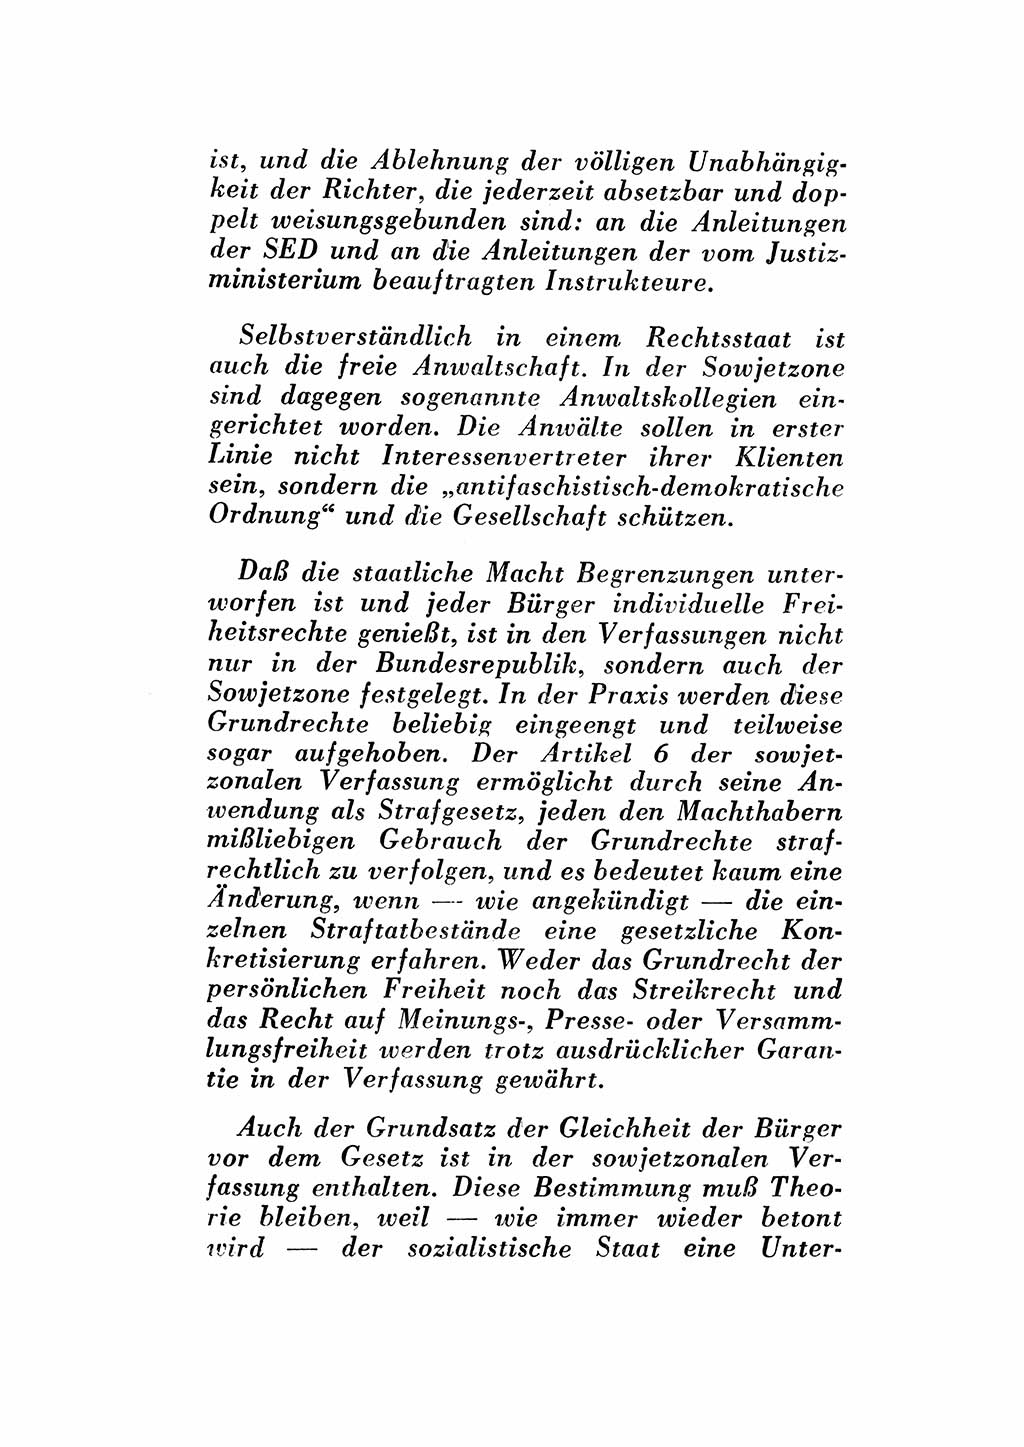 Katalog des Unrechts, Untersuchungsausschuß Freiheitlicher Juristen (UfJ) [Bundesrepublik Deutschland (BRD)] 1956, Seite 4 (Kat. UnR. UfJ BRD 1956, S. 4)